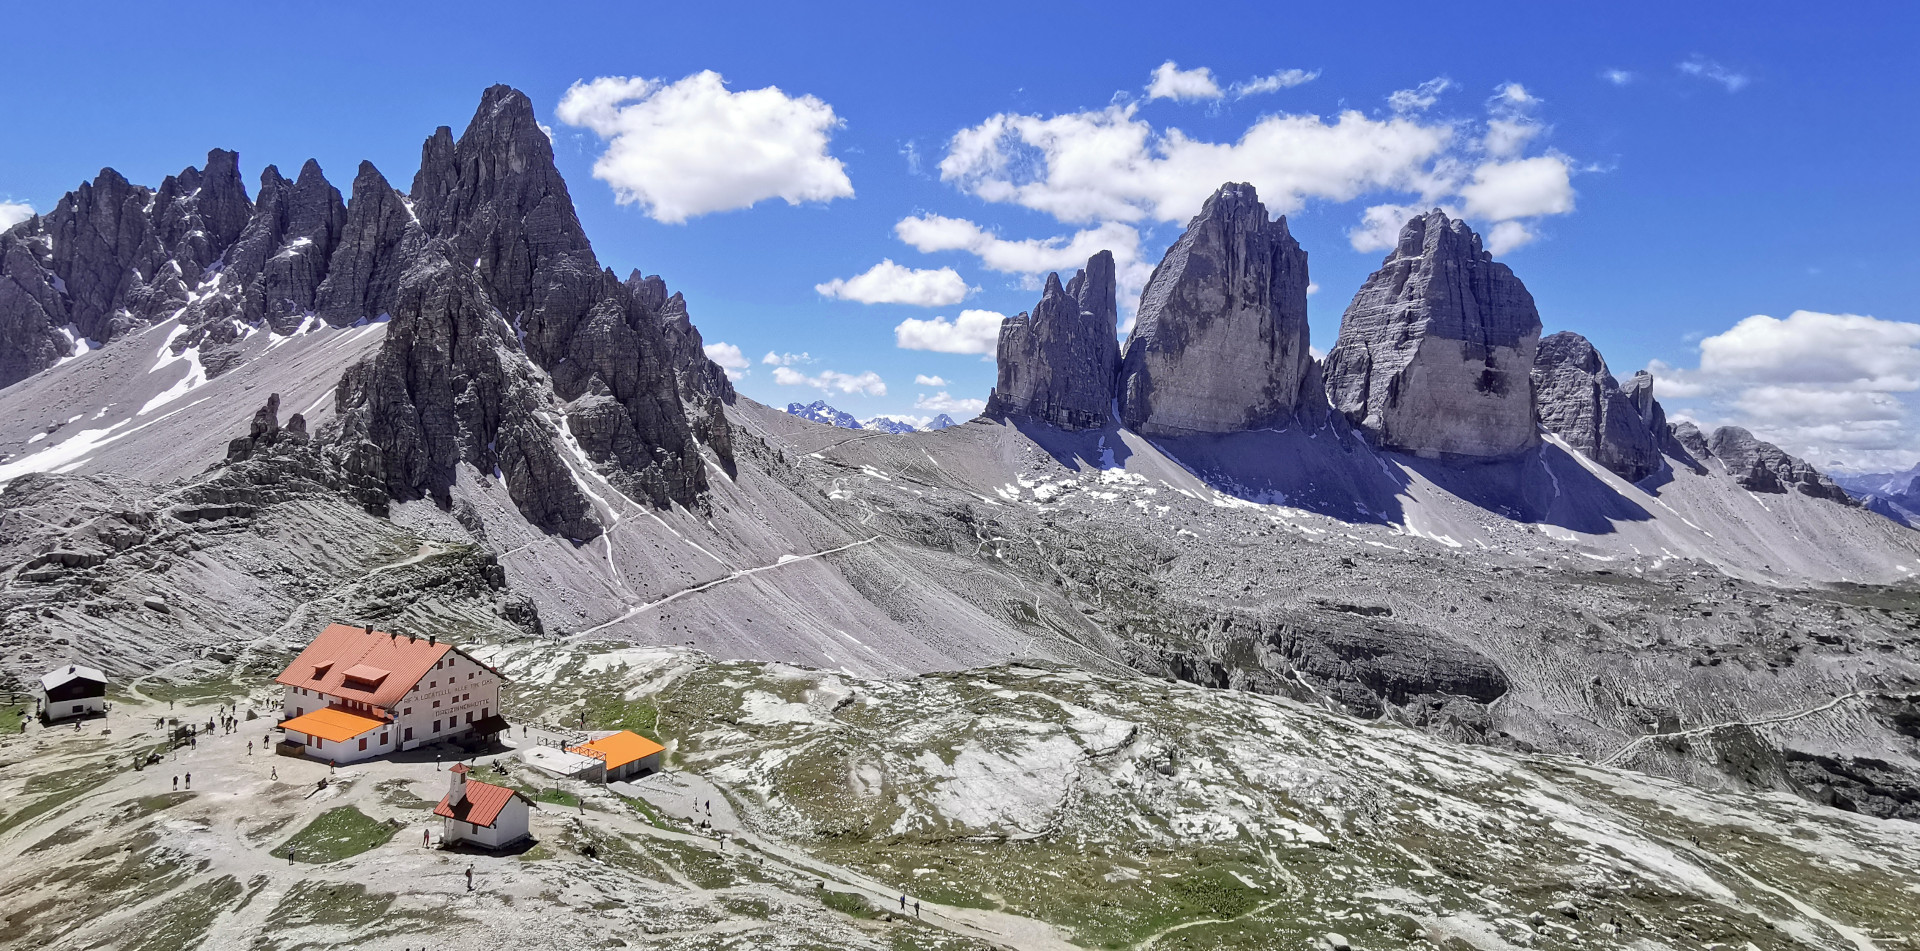 Rifugio Locatelli and the Three Peaks